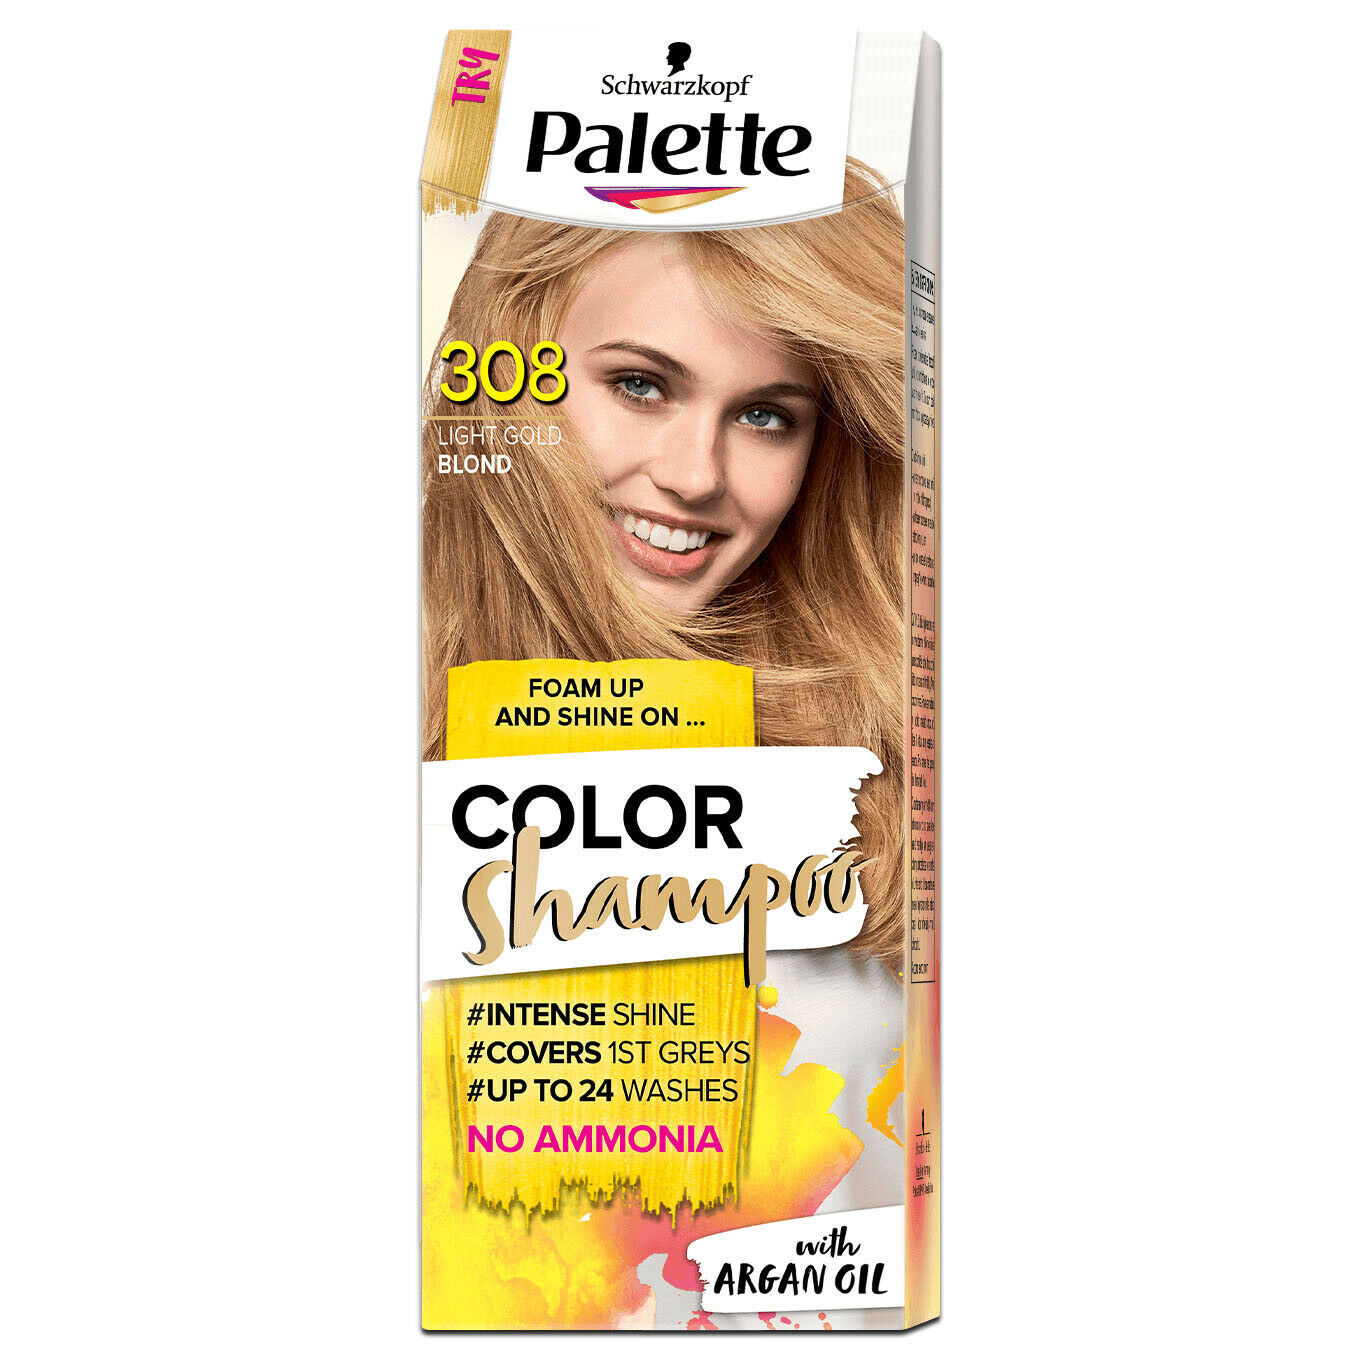 Genuine Schwarzkopf Palette Hair Color Shampoo dye 308 Golden Blond Ammonia FREE - $15.50